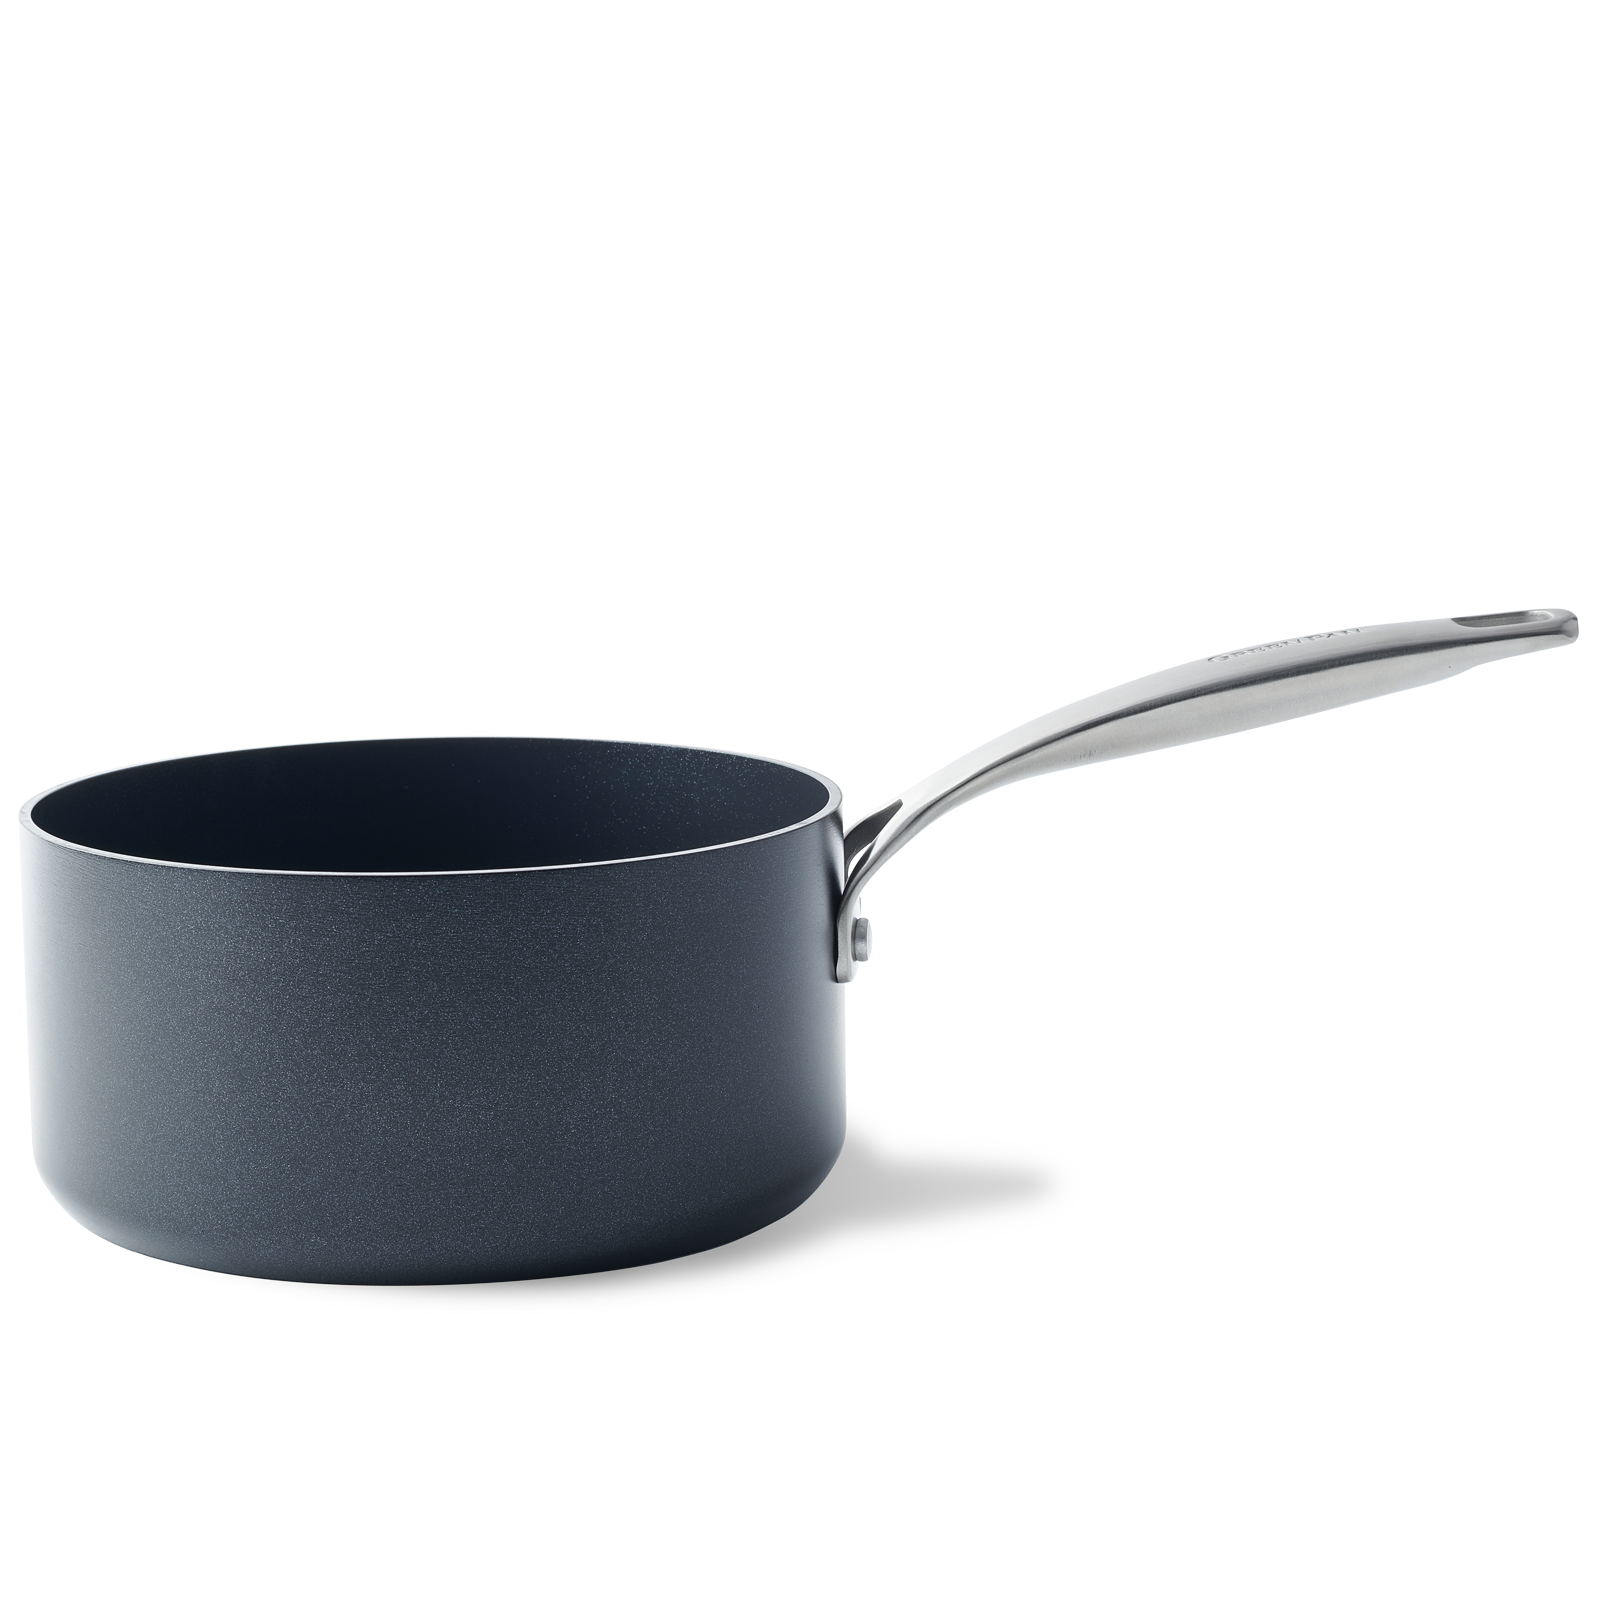 PRIMA 18cm Sauce Pan (Ceramic Coated)